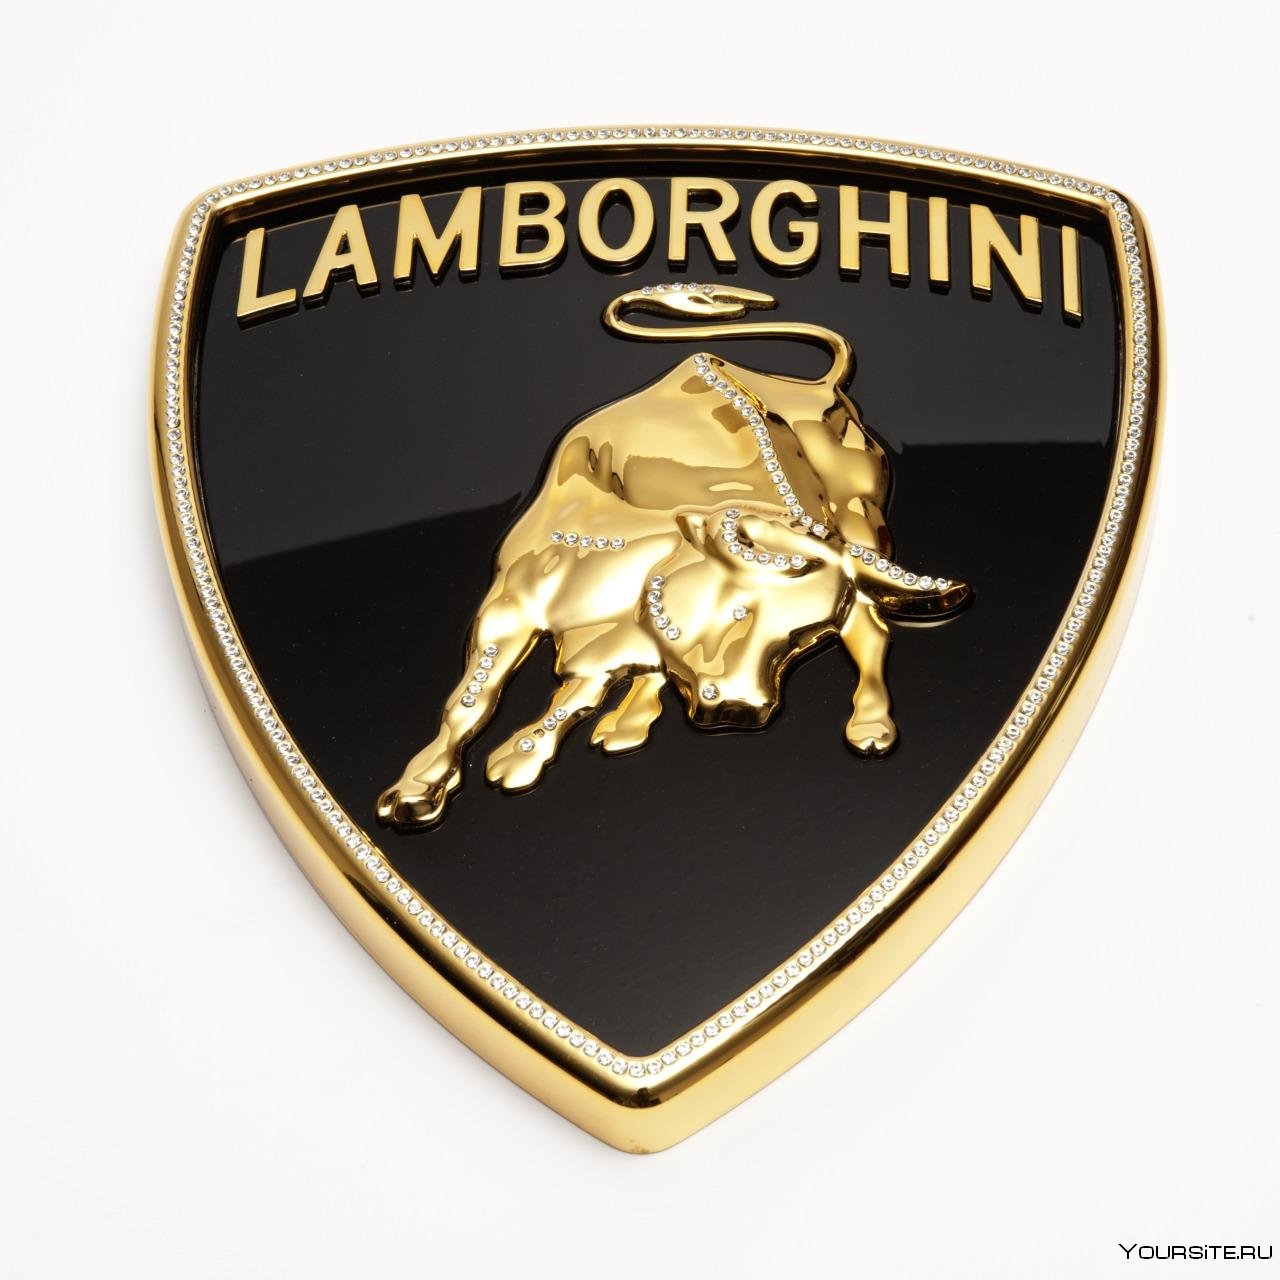 Новый значок ламборгини. Марка Ламборджини. Lamborghini эмблема. Ламборгини знак машины. Автомобильные значки Ламборджини.